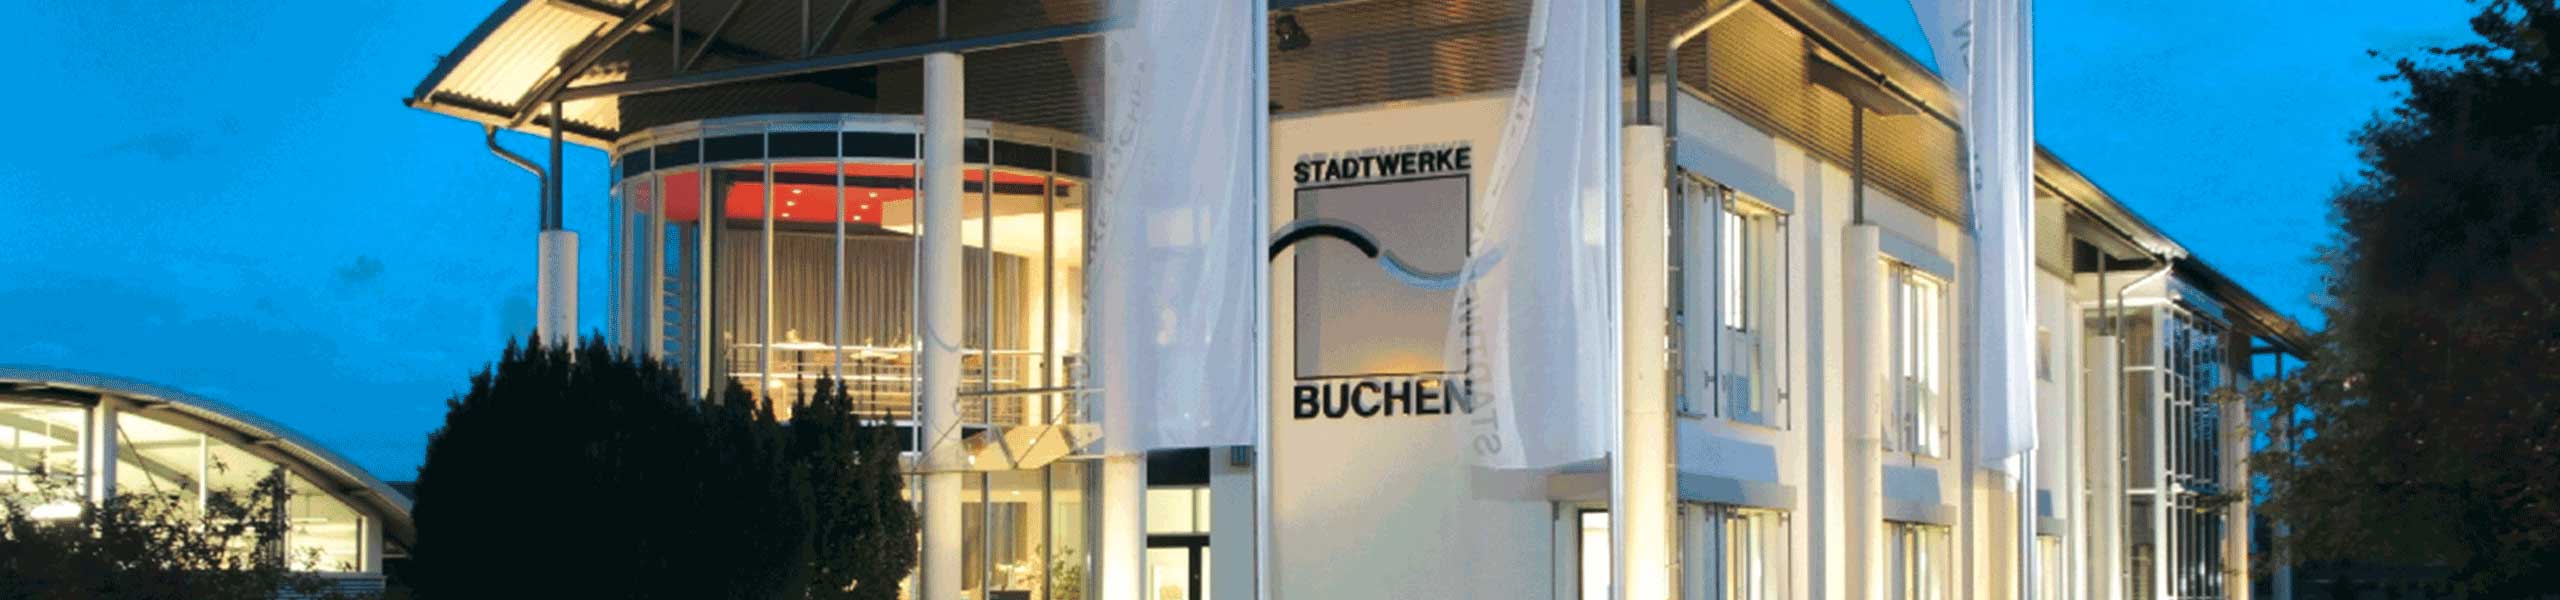 Stadtwerke Buchen GmbH & Co KG - Ihr Versorger vor Ort - Waldhausen